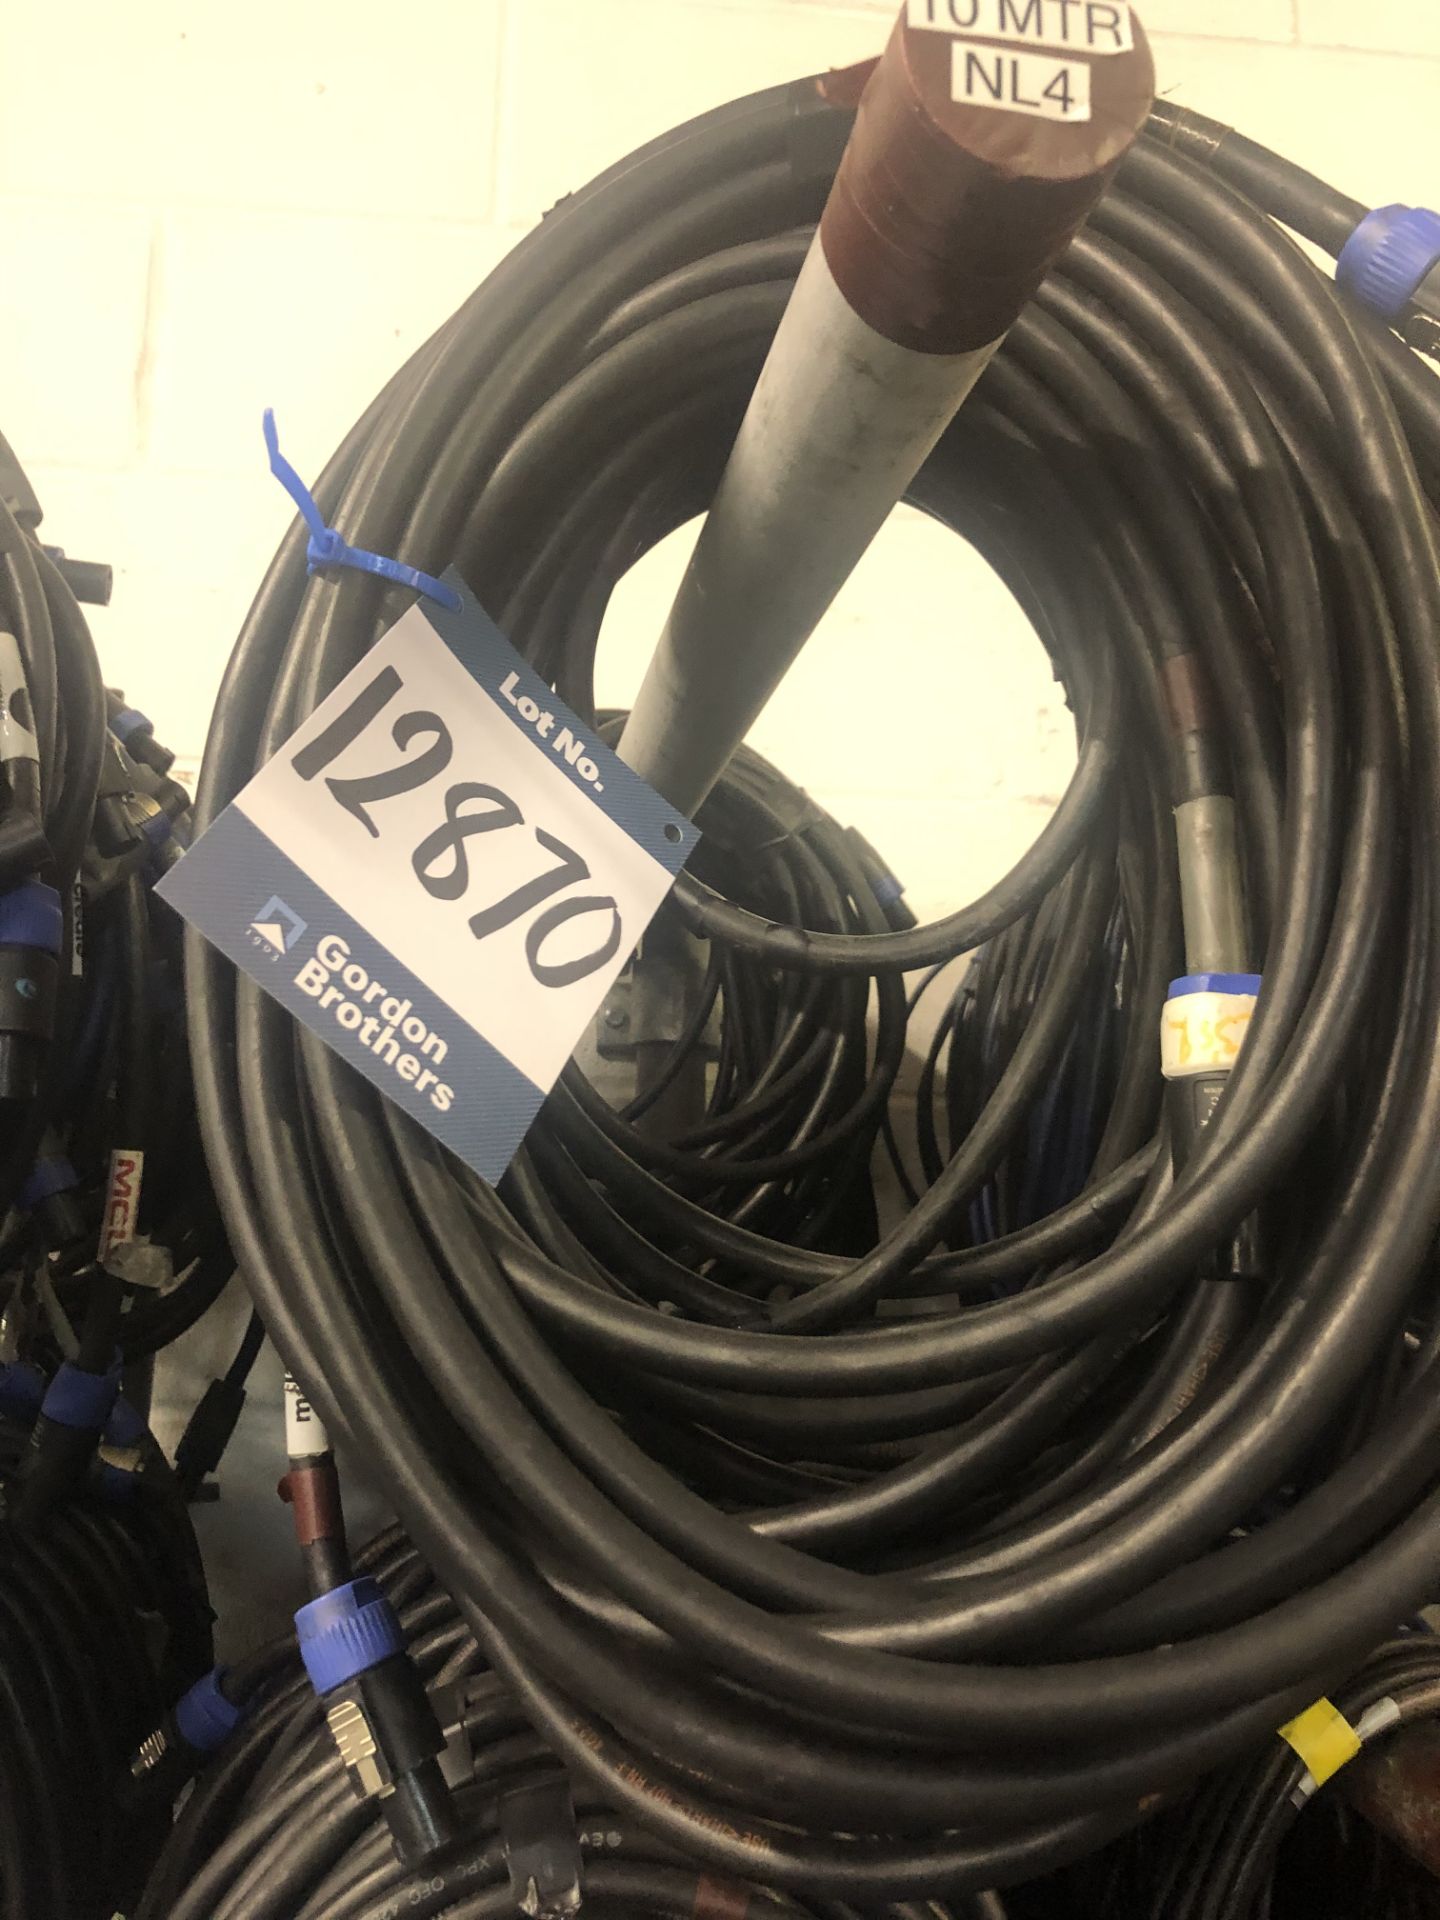 5x No. 10m NL4 cables